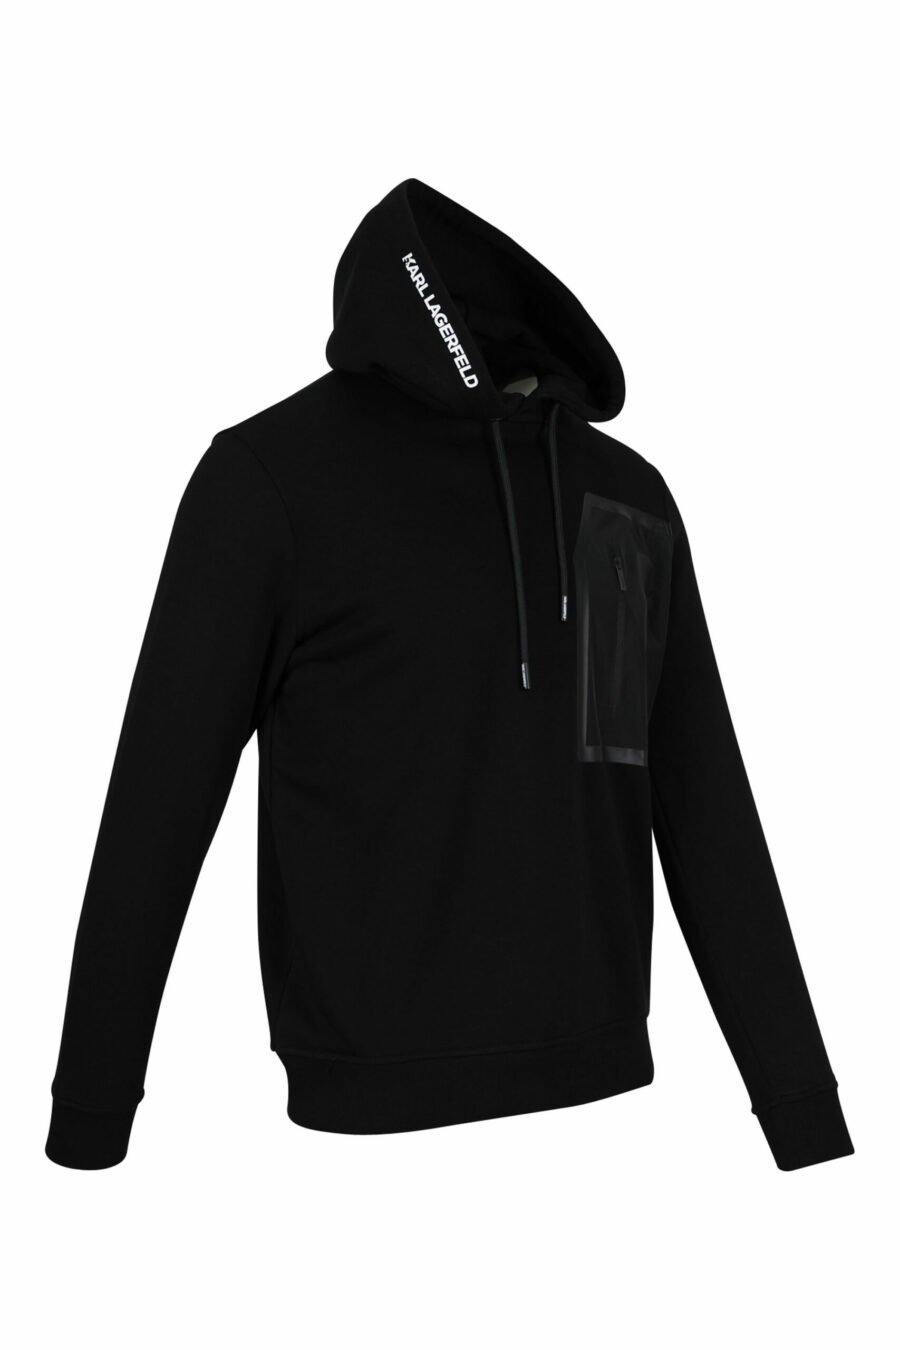 Schwarzes Sweatshirt mit Kapuze und Nylontasche - 4062226389976 1 skaliert